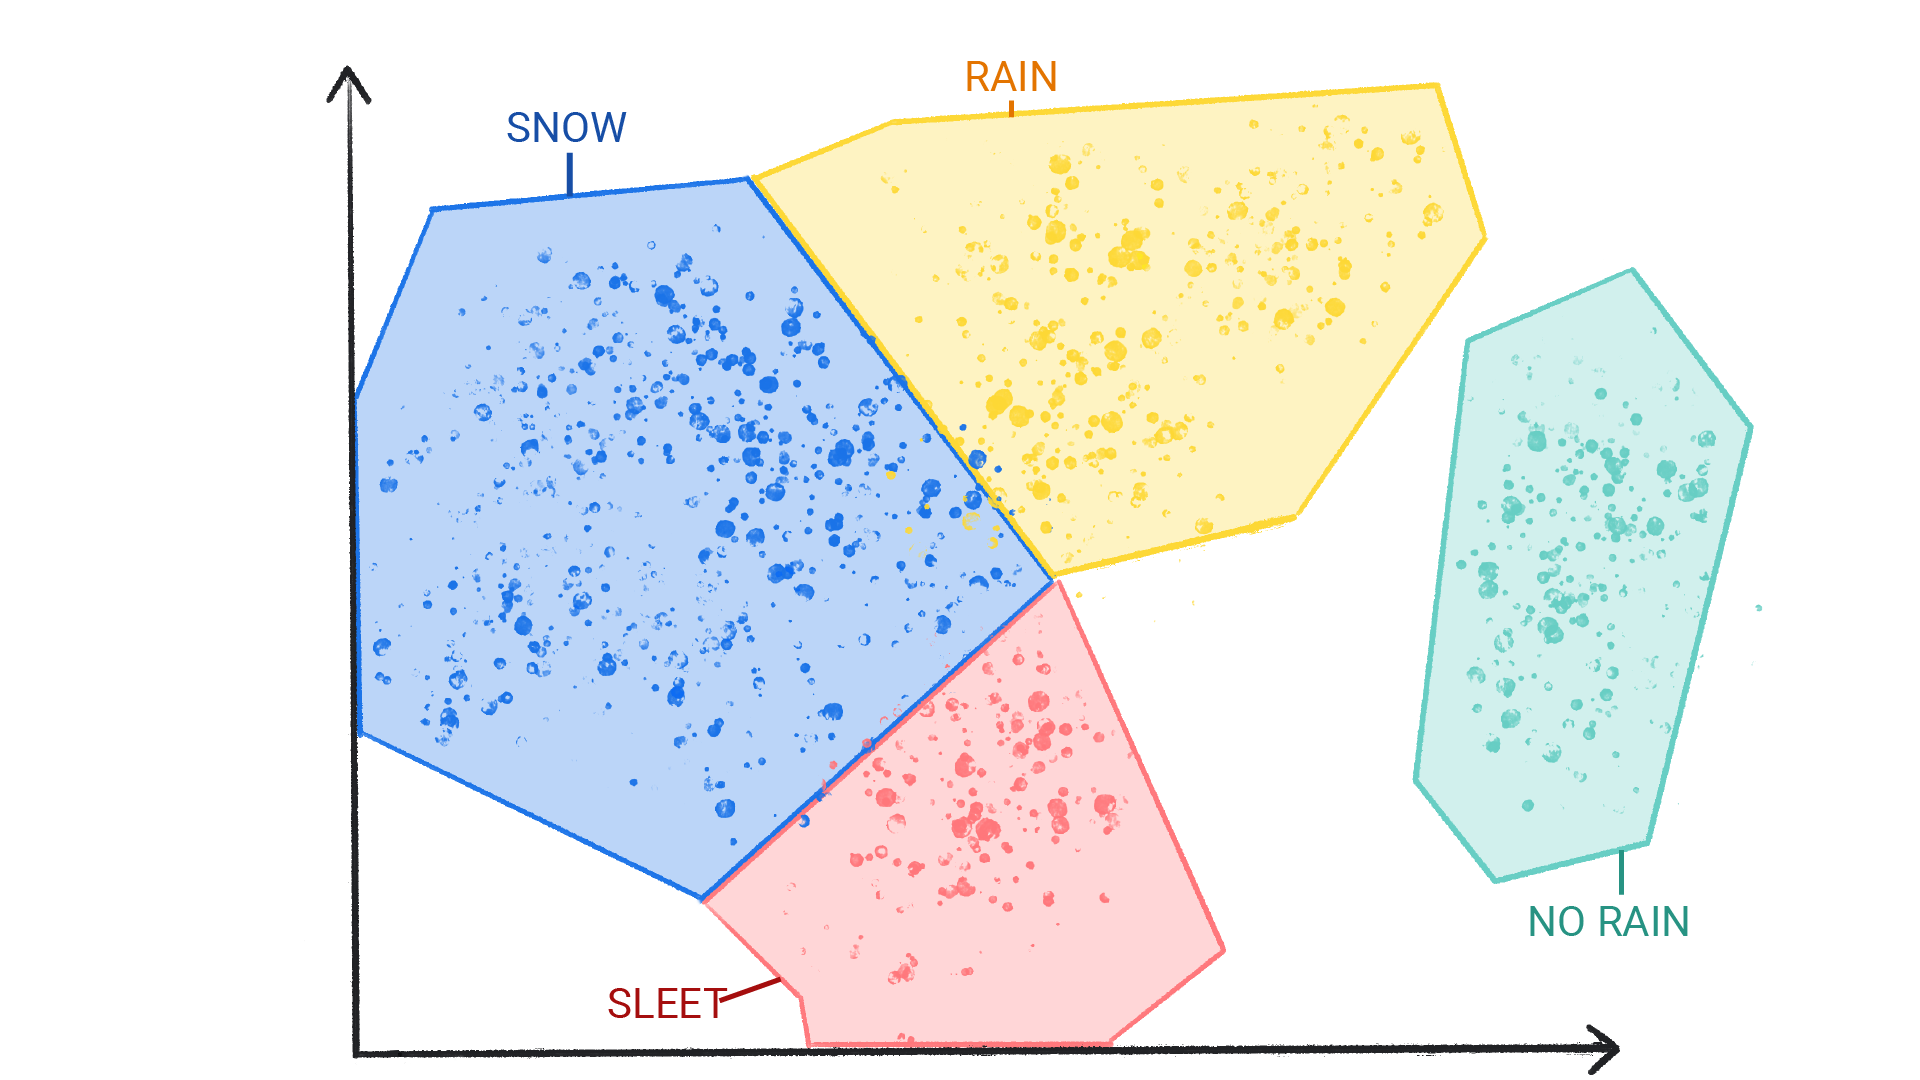 Birbiriyle sınırlanmış, kar, yağmur, dolu ve yağmursuz olarak etiketlenmiş kümeler içindeki renkli noktaların gösterildiği bir resim.